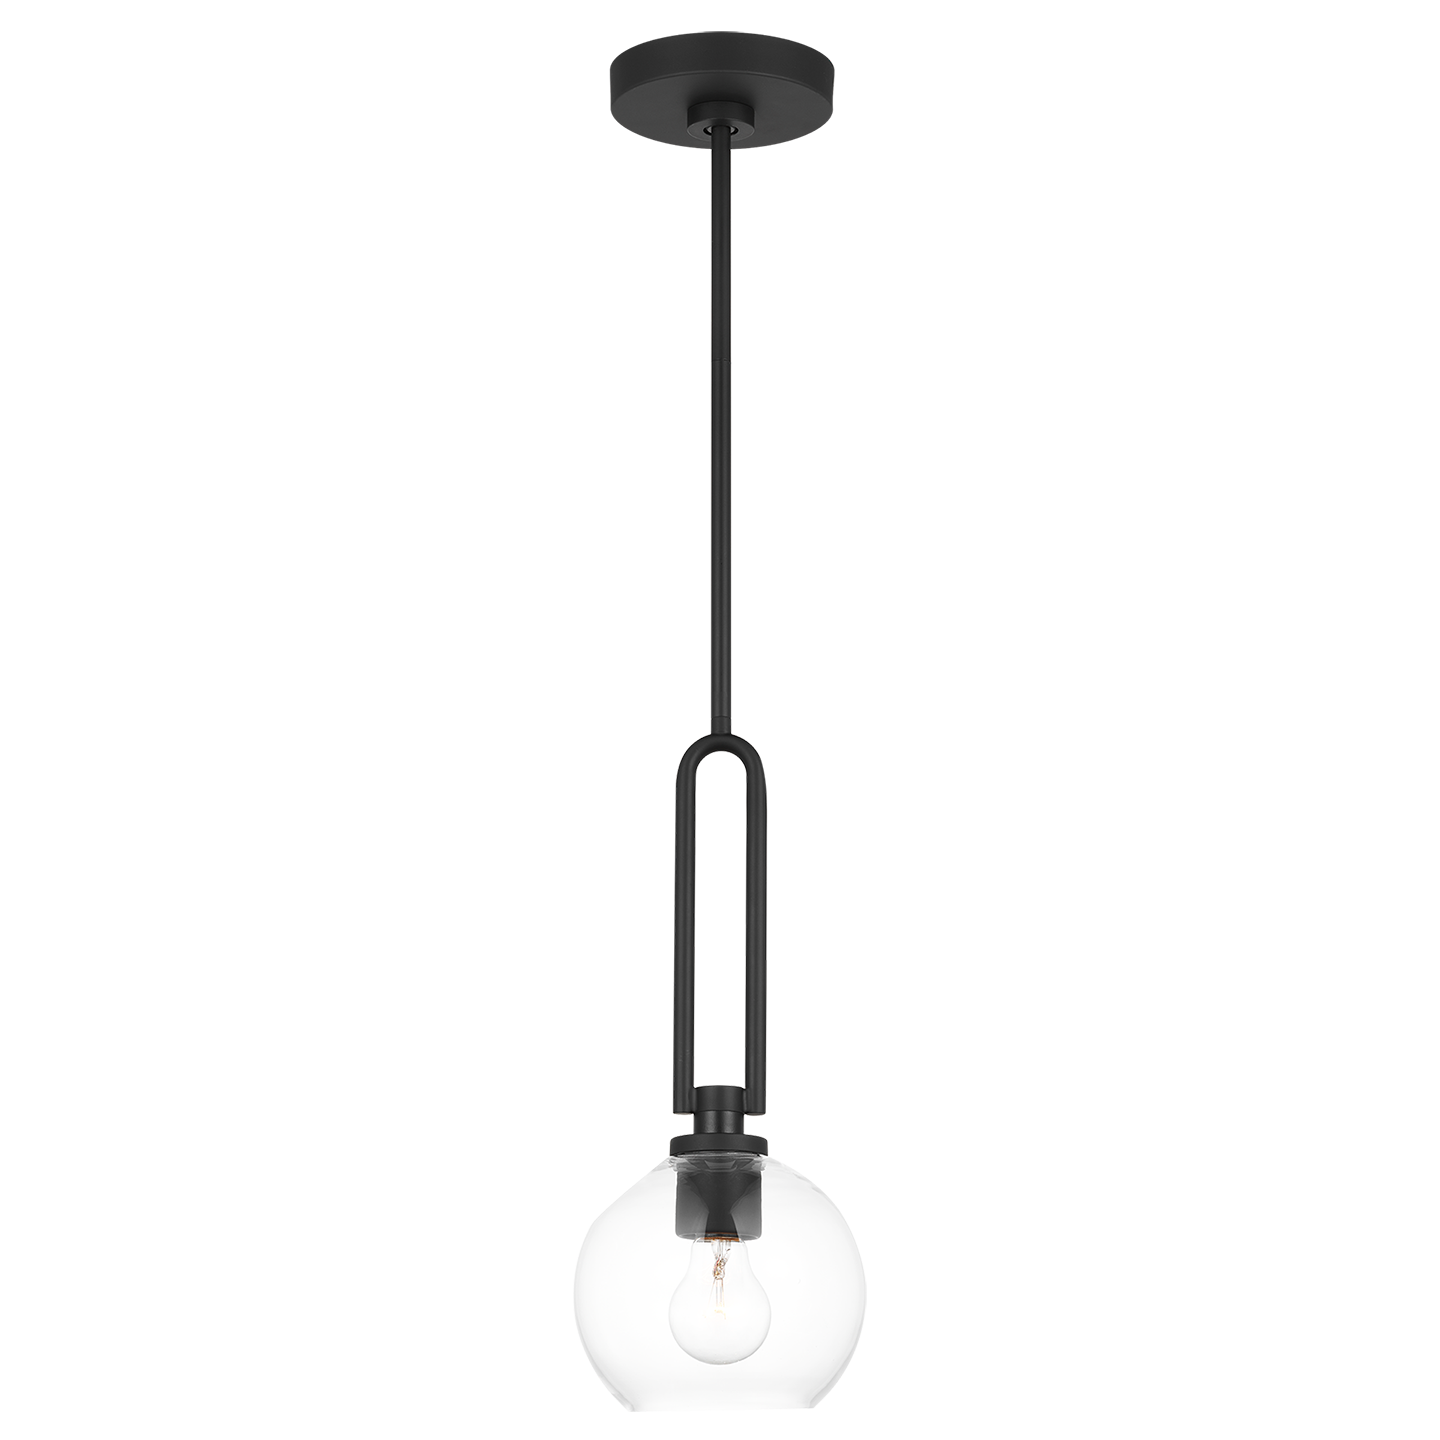 Codyn 1-Light Mini Pendant (with Bulbs)